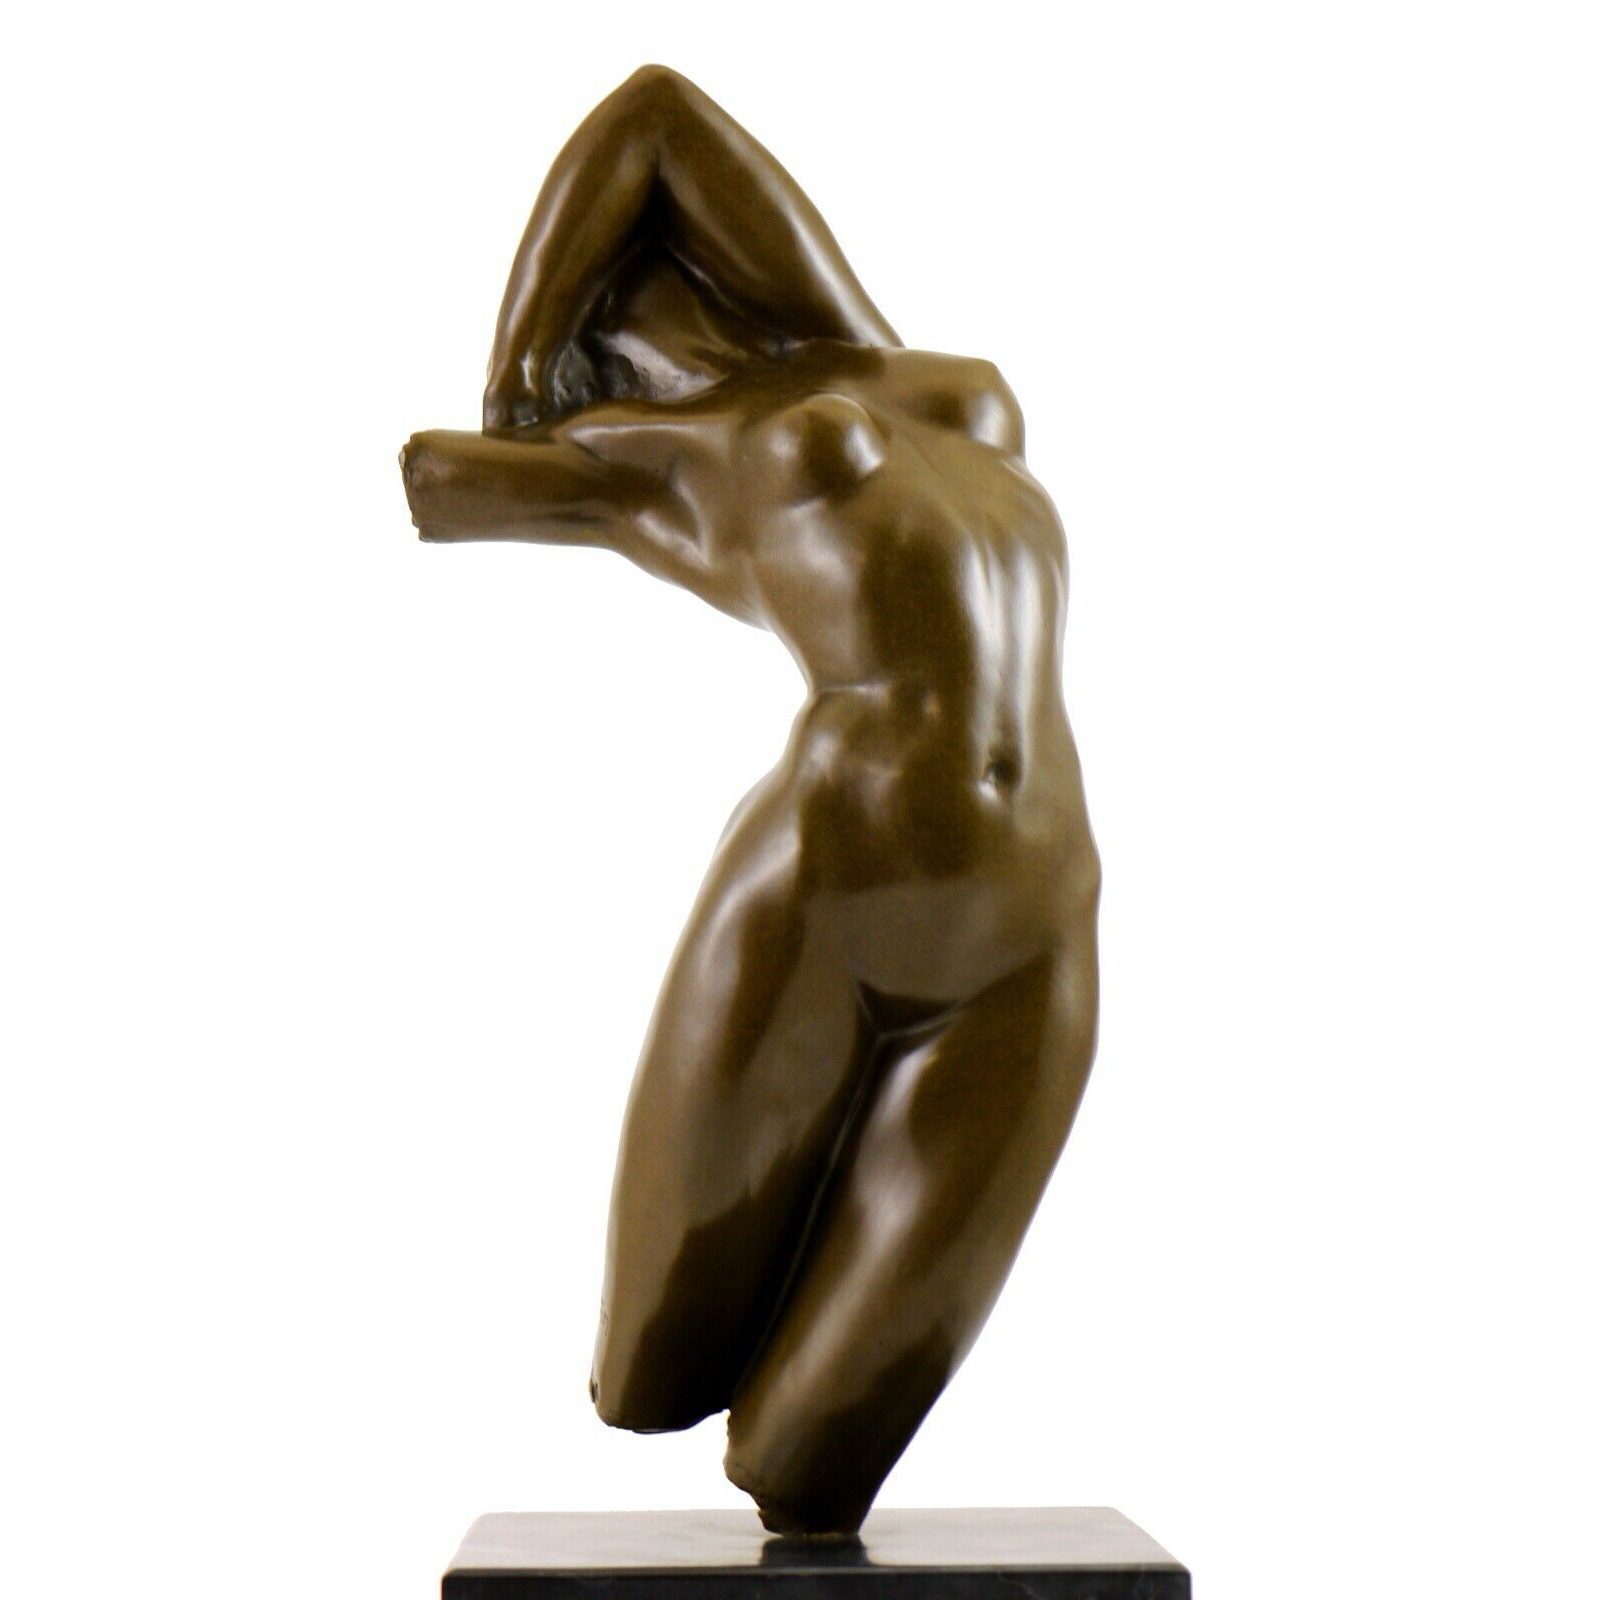 Torso of Adele Rodin